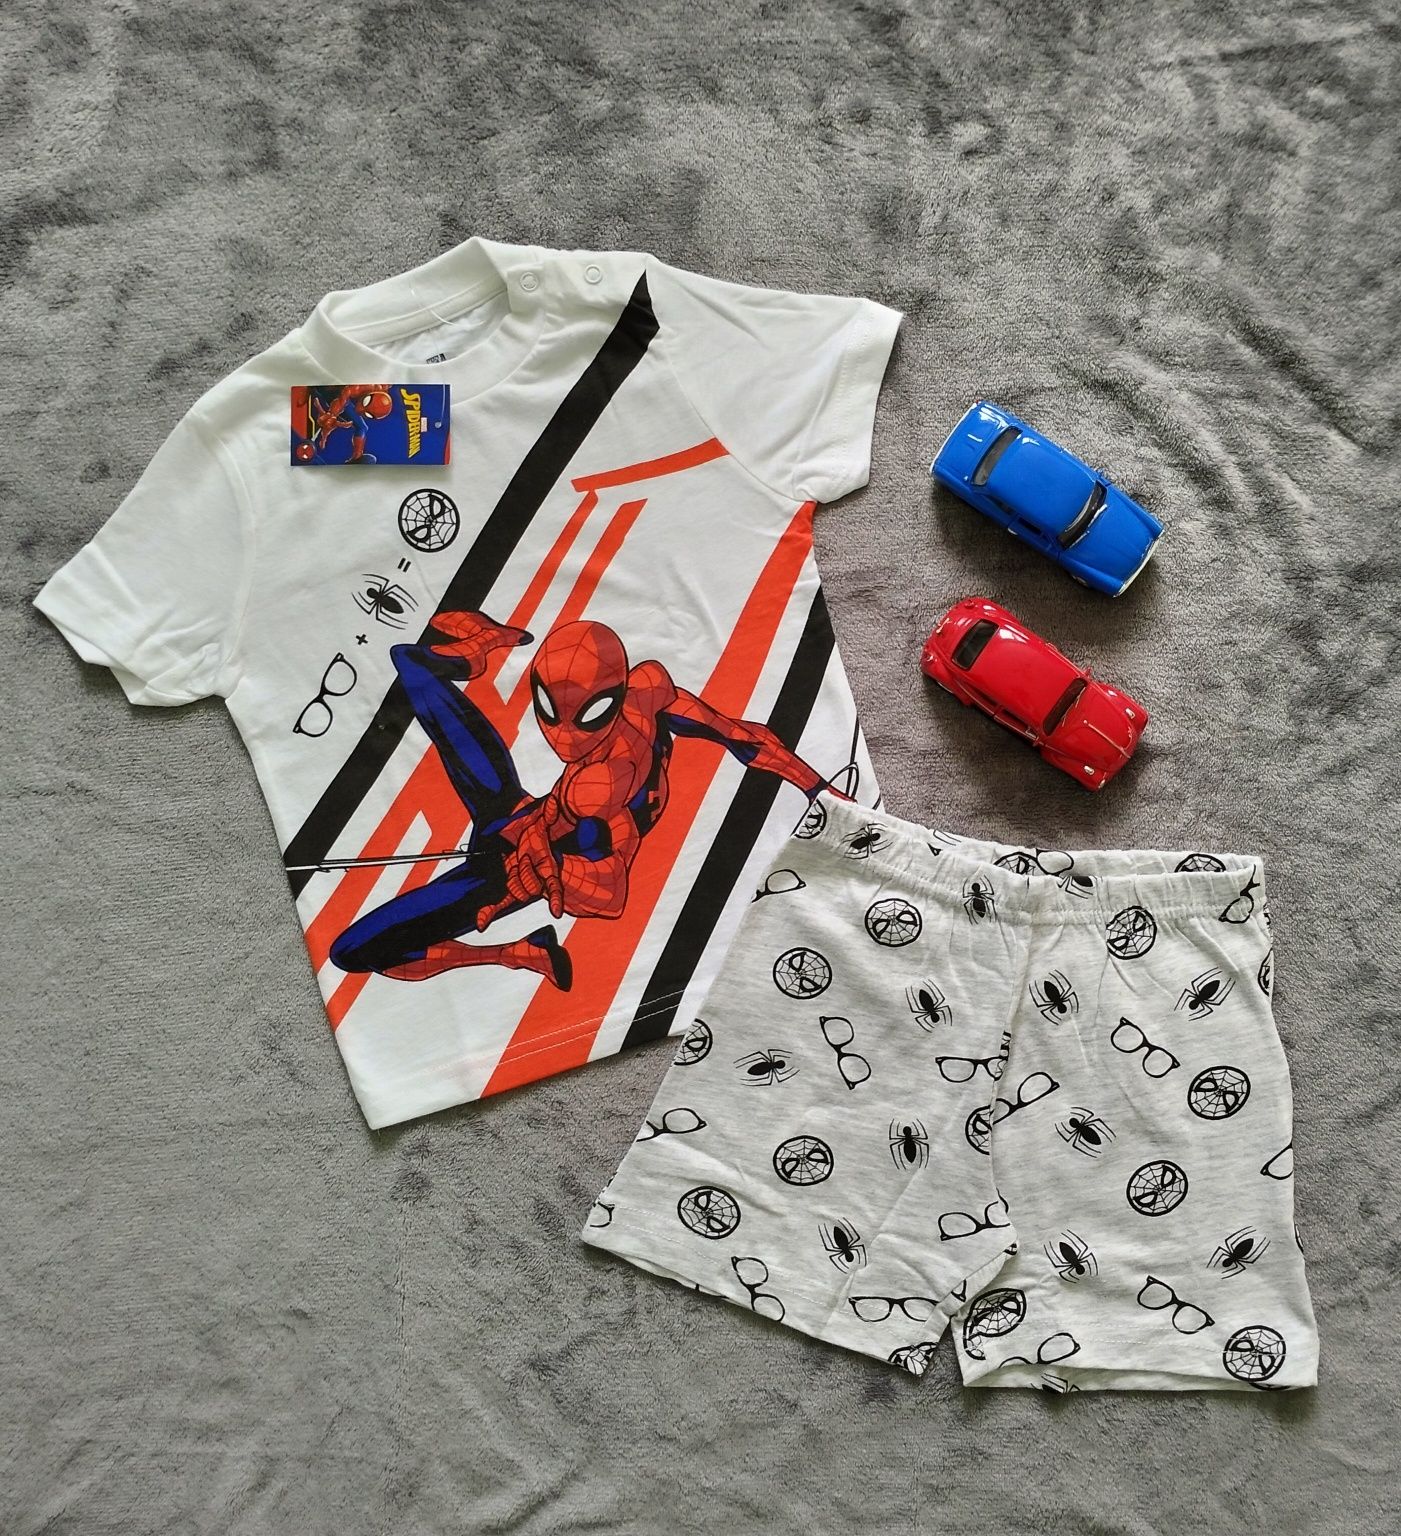 Piżama dla chłopca, Spiderman, rozmiar, 98/104.